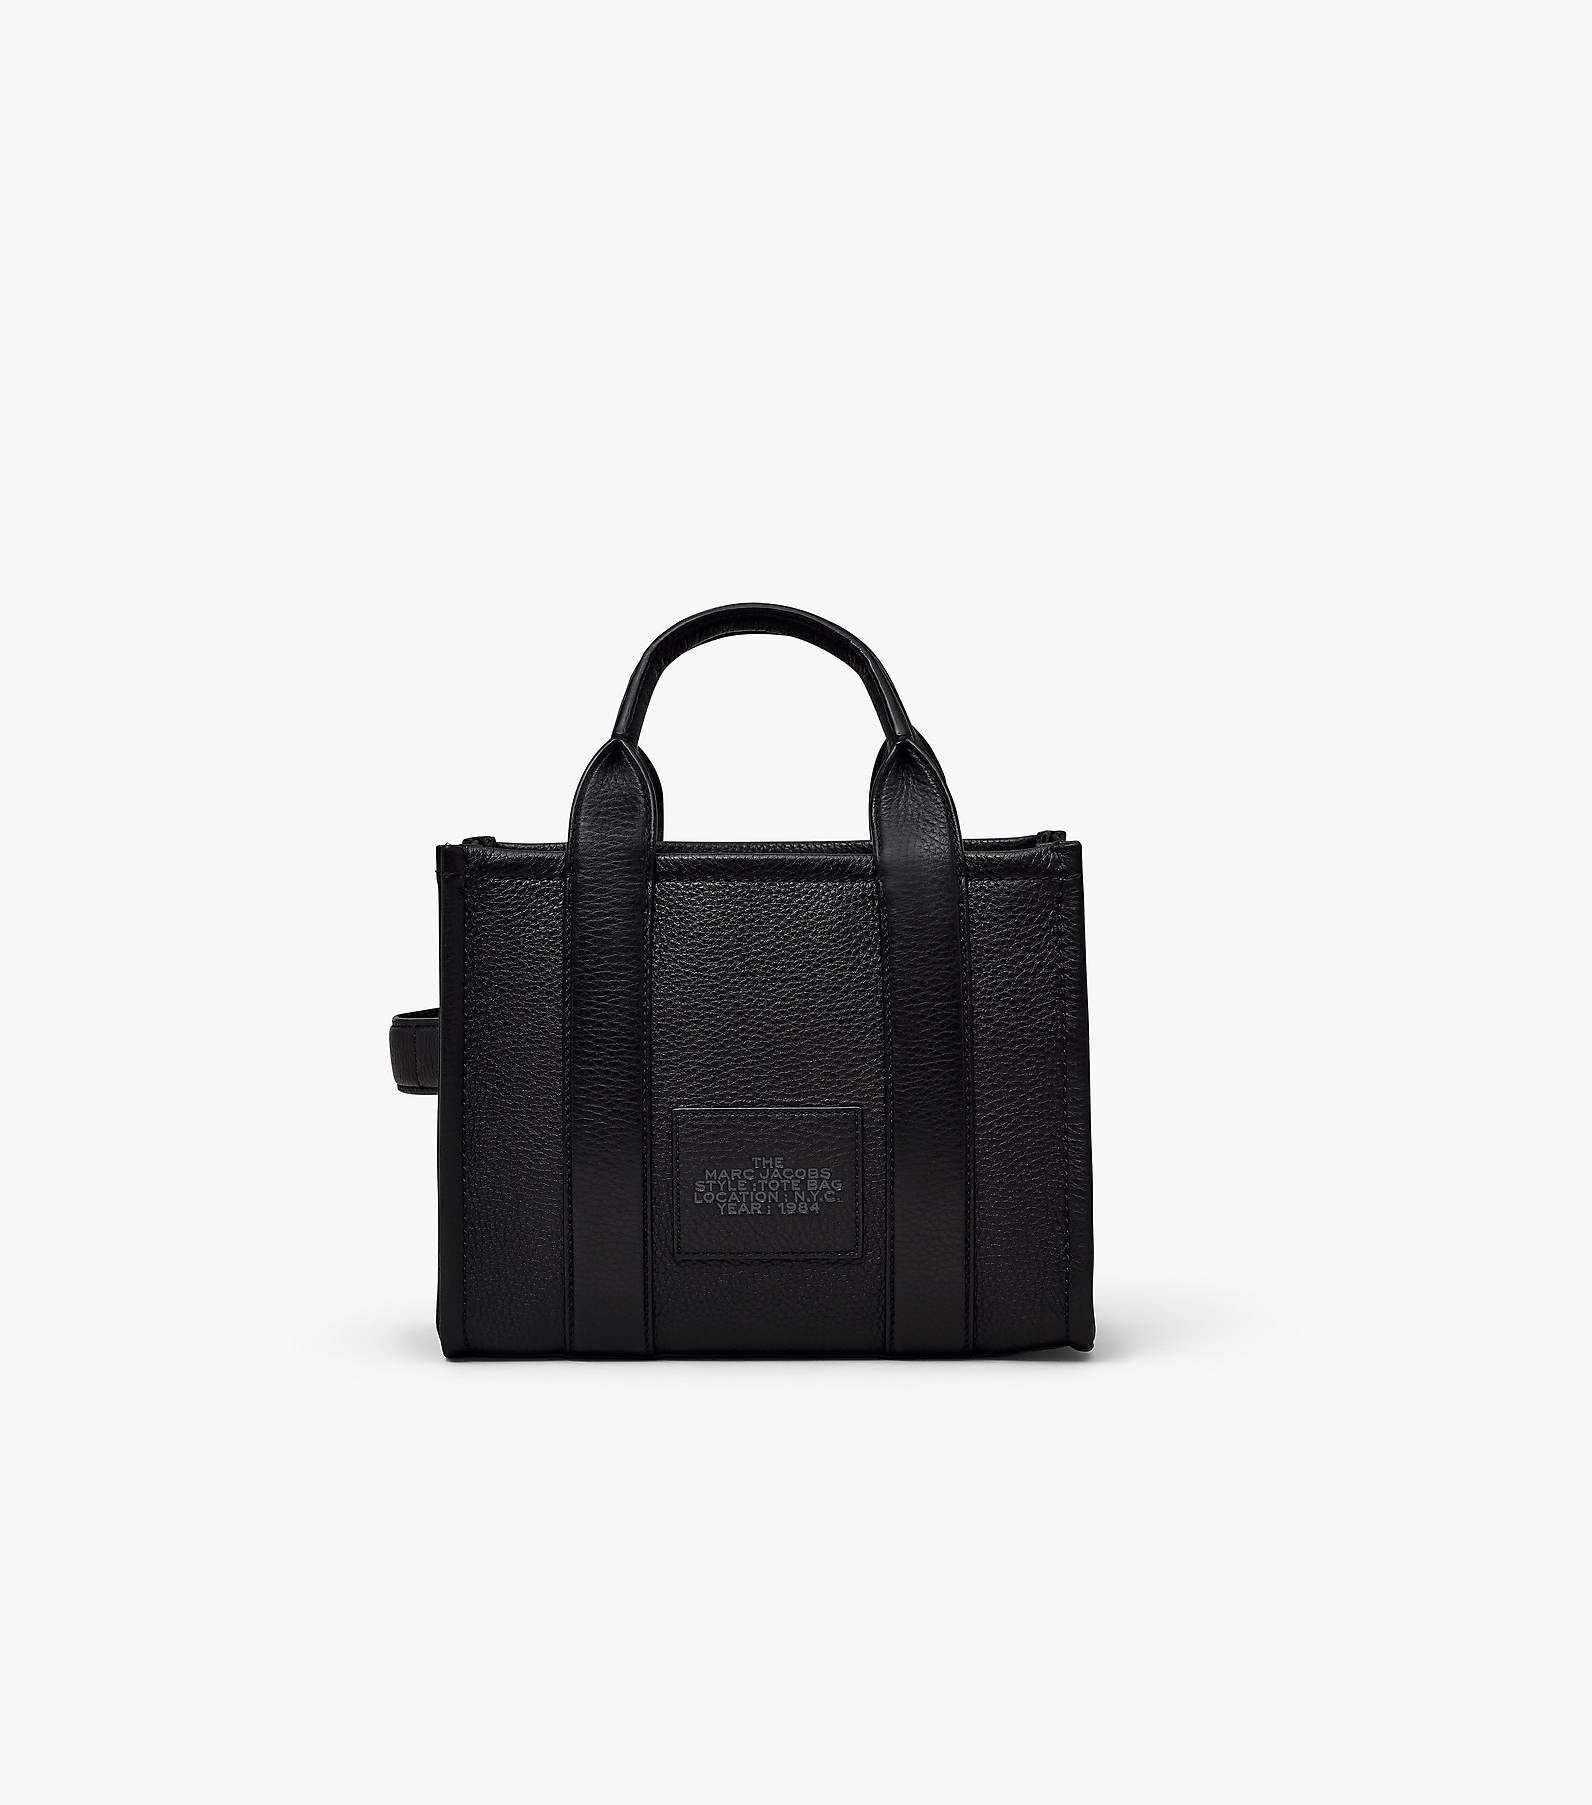 16,100円The Tote Bag Marc Jacobs Leather Edition